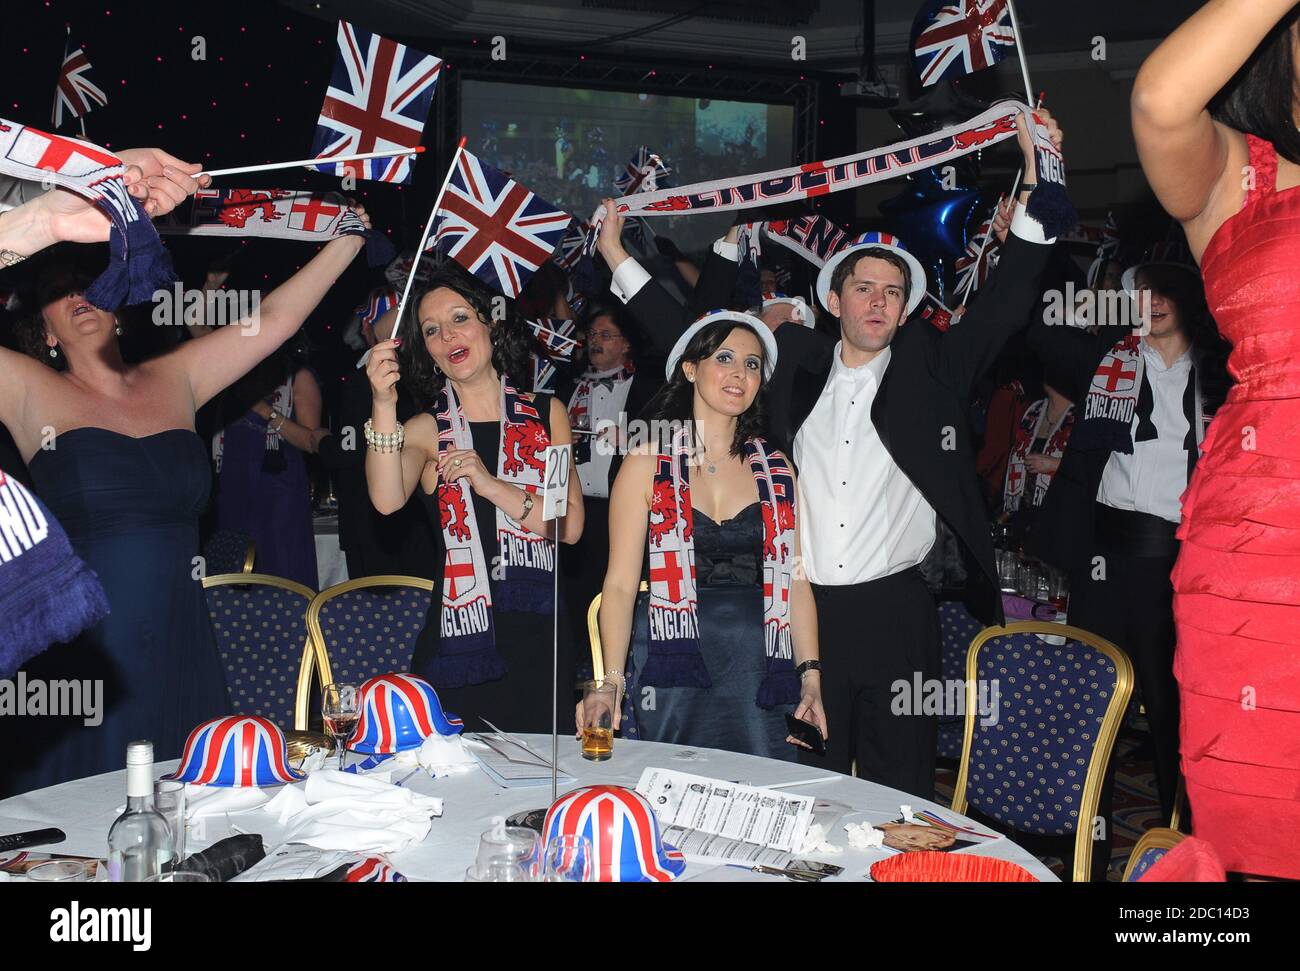 Les gens s'amusent au dîner de gala de charité Grande-Bretagne 2011 Banque D'Images